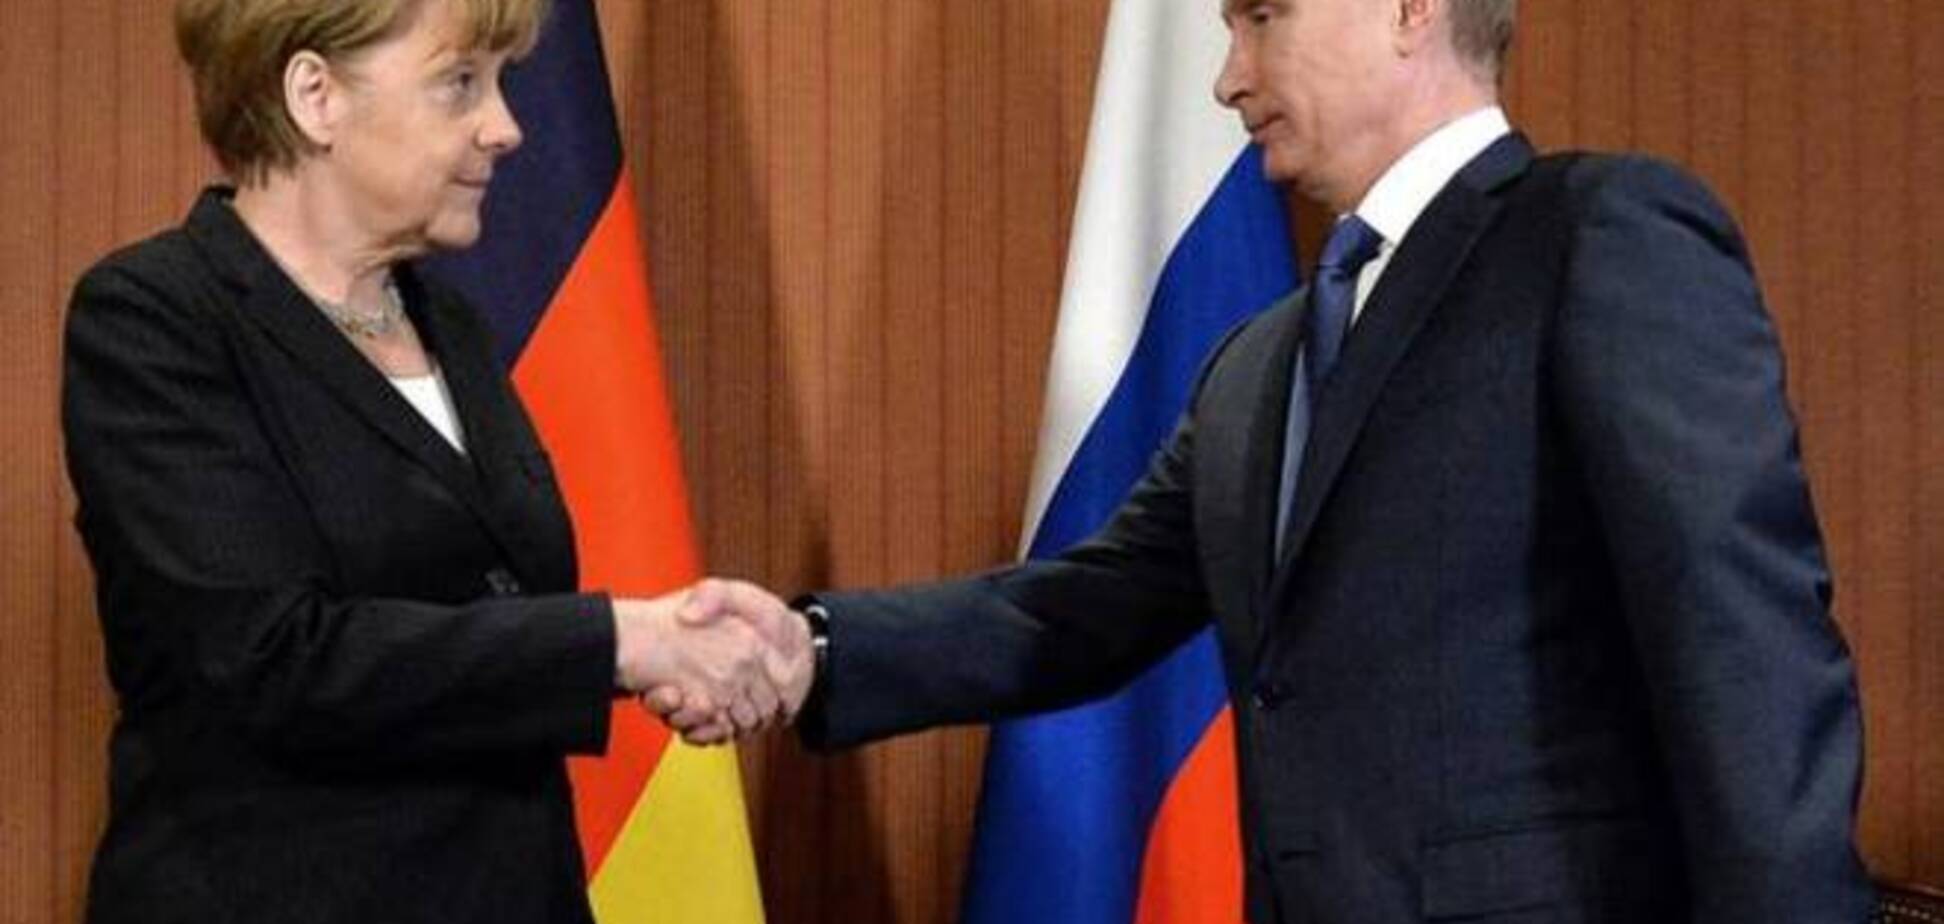 The Independent обнародовало cекретный план Путина и Меркель